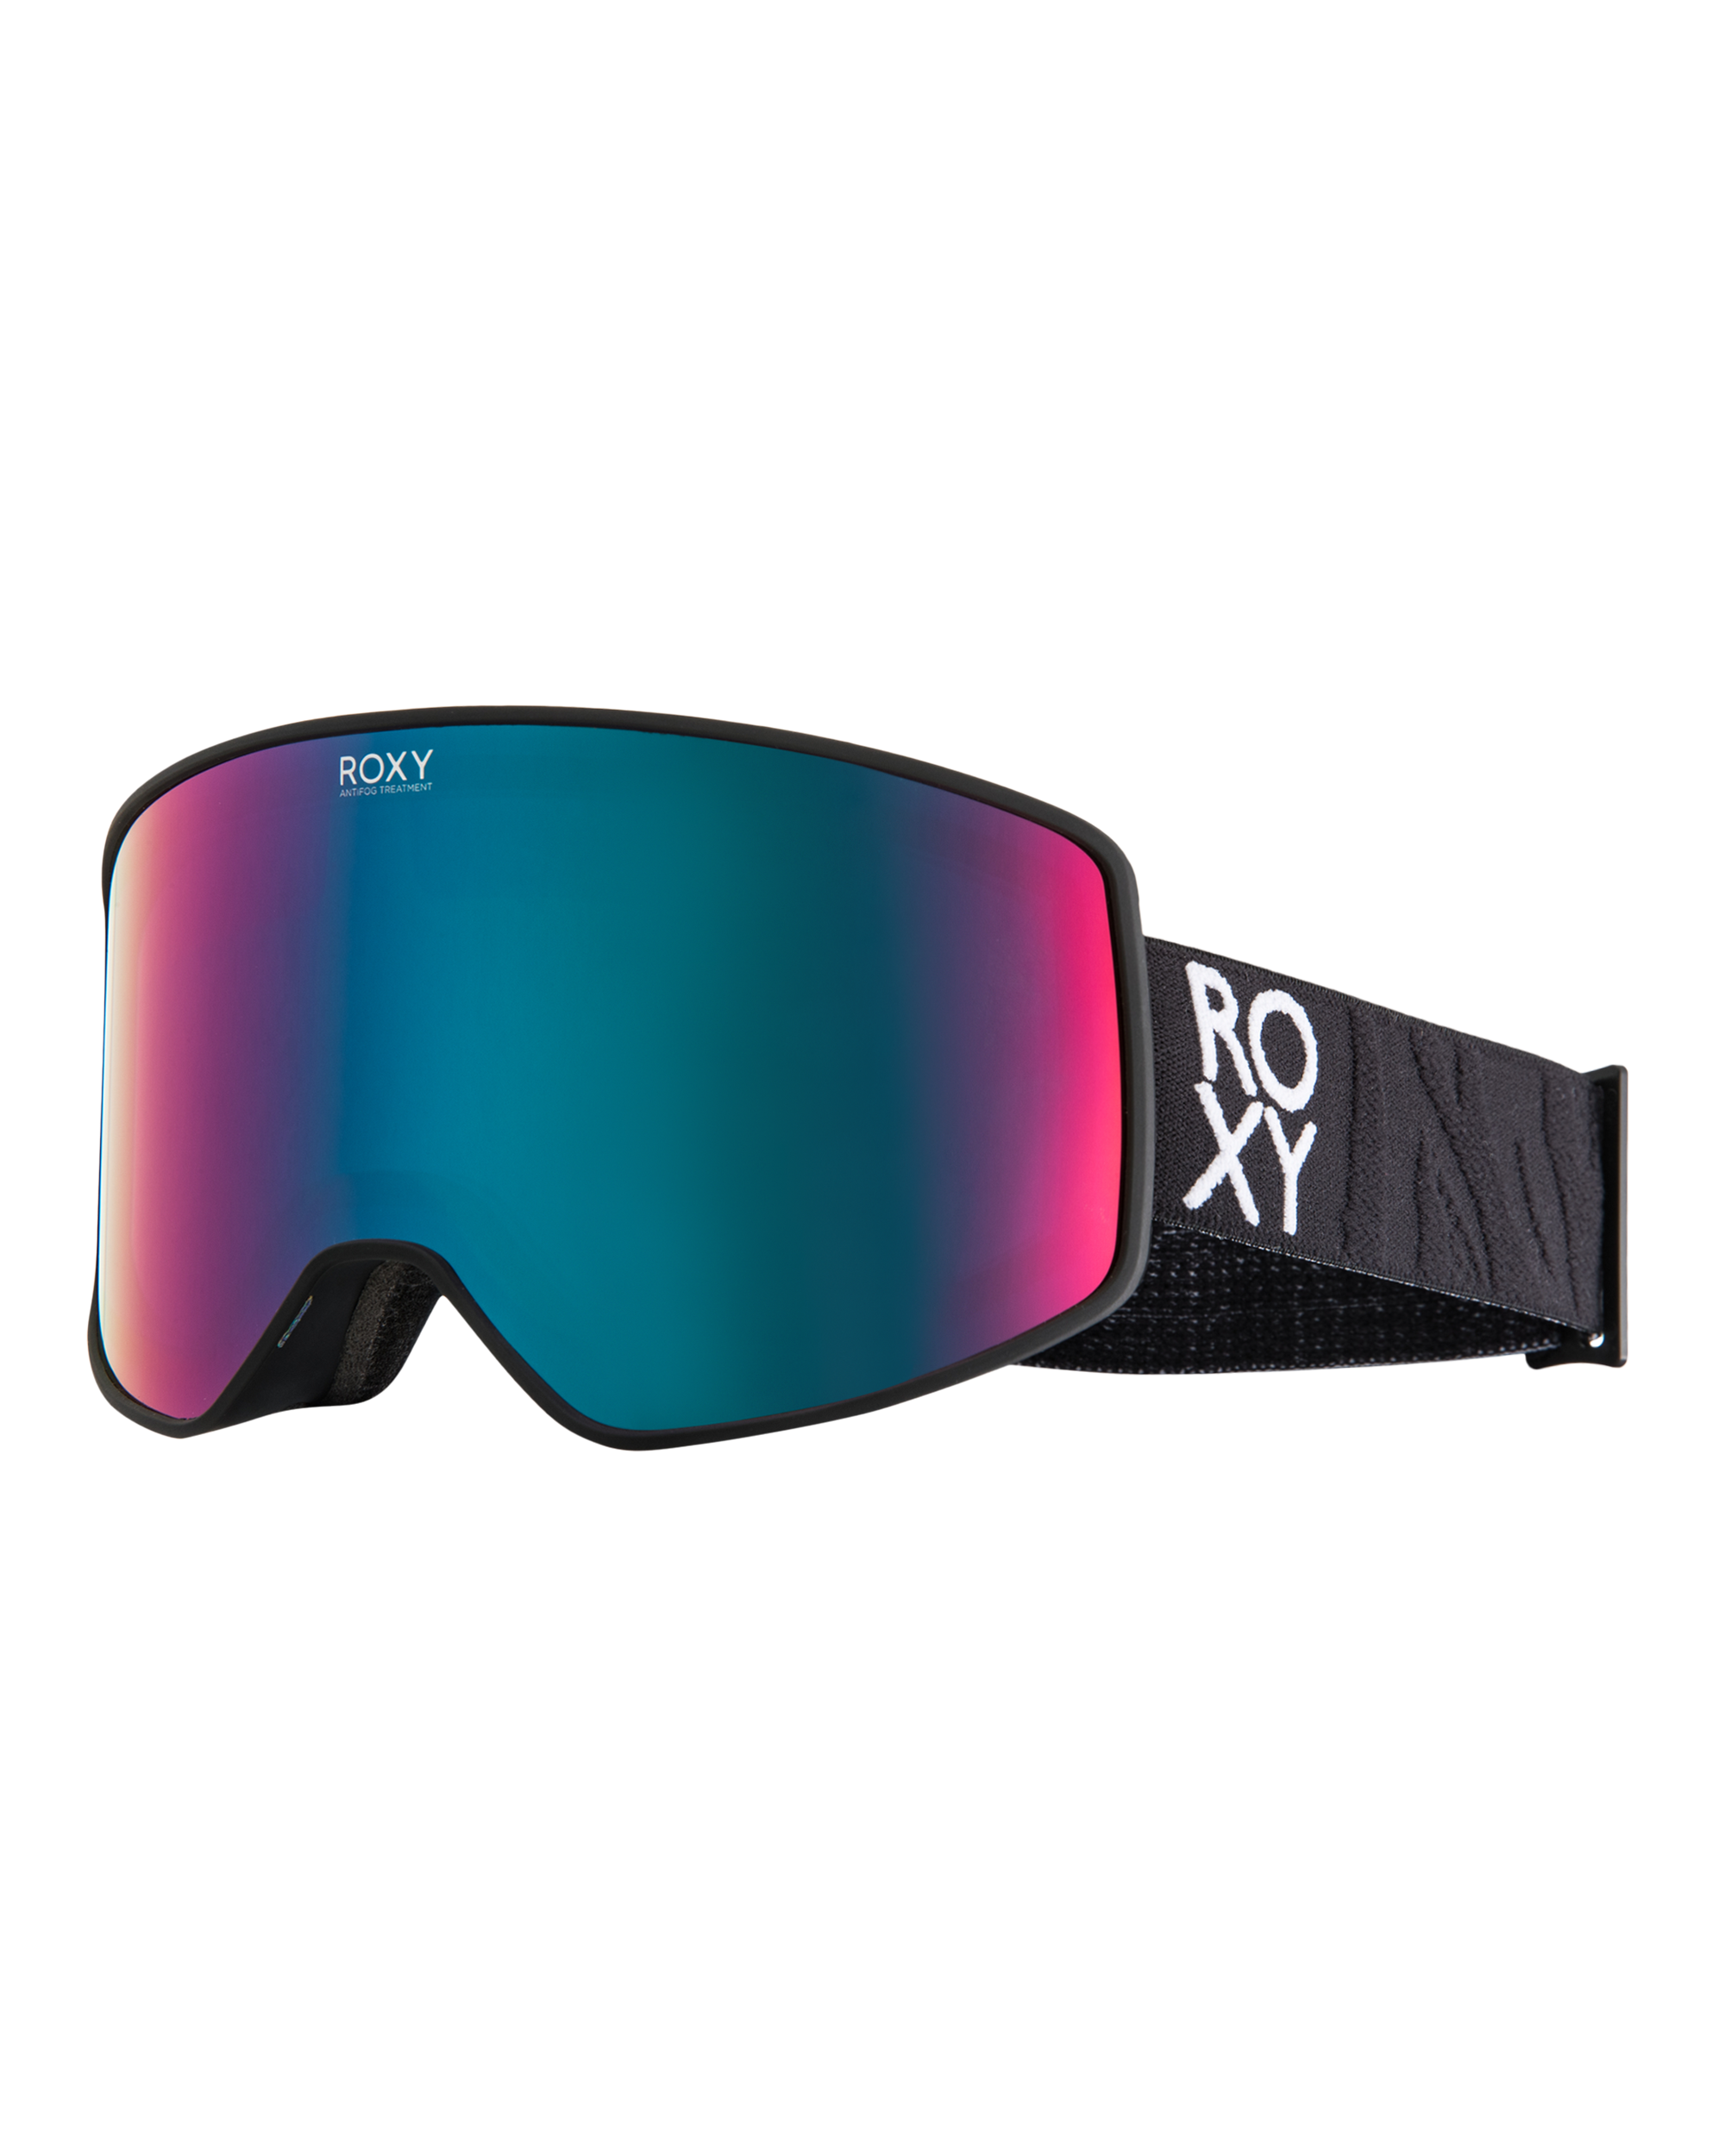 Roxy 2023/24 Goggles Preview - Boardsport SOURCE